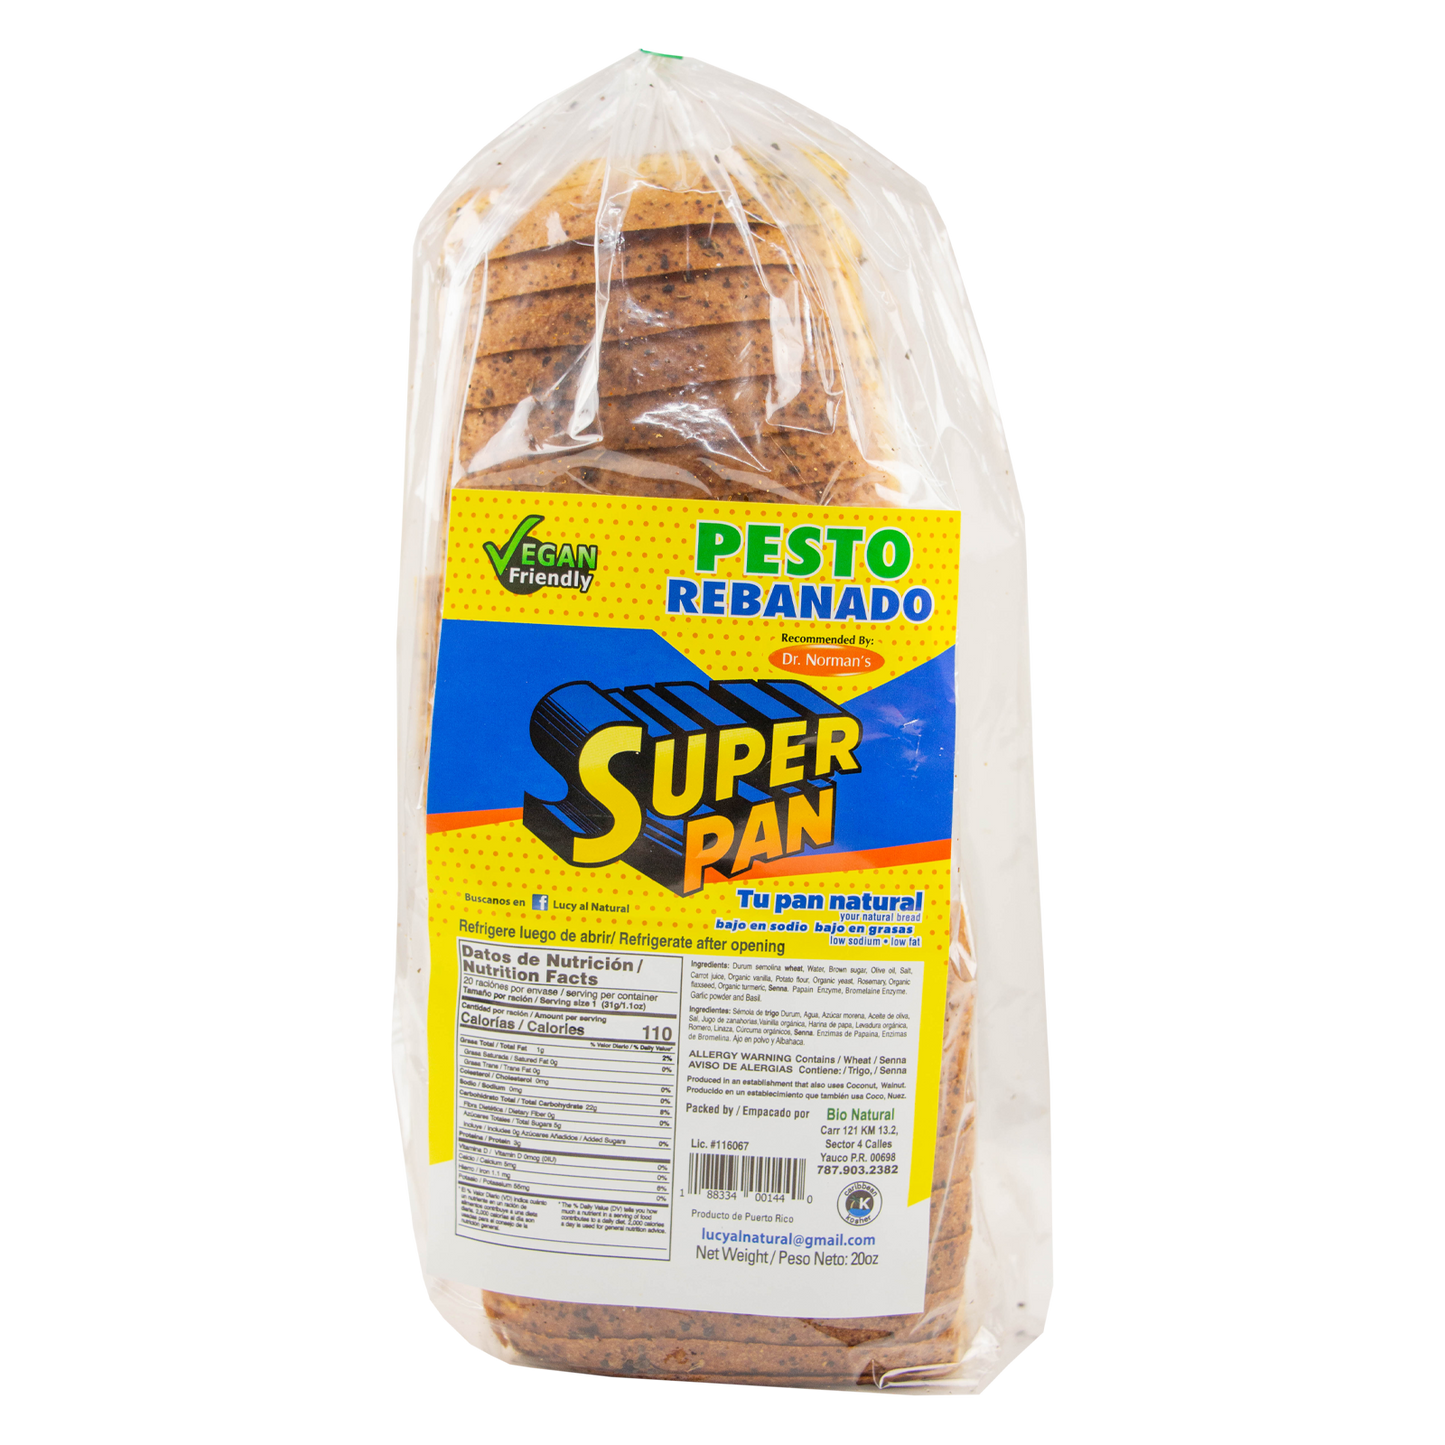 Super Pan - Pan con Pesto Rebanado